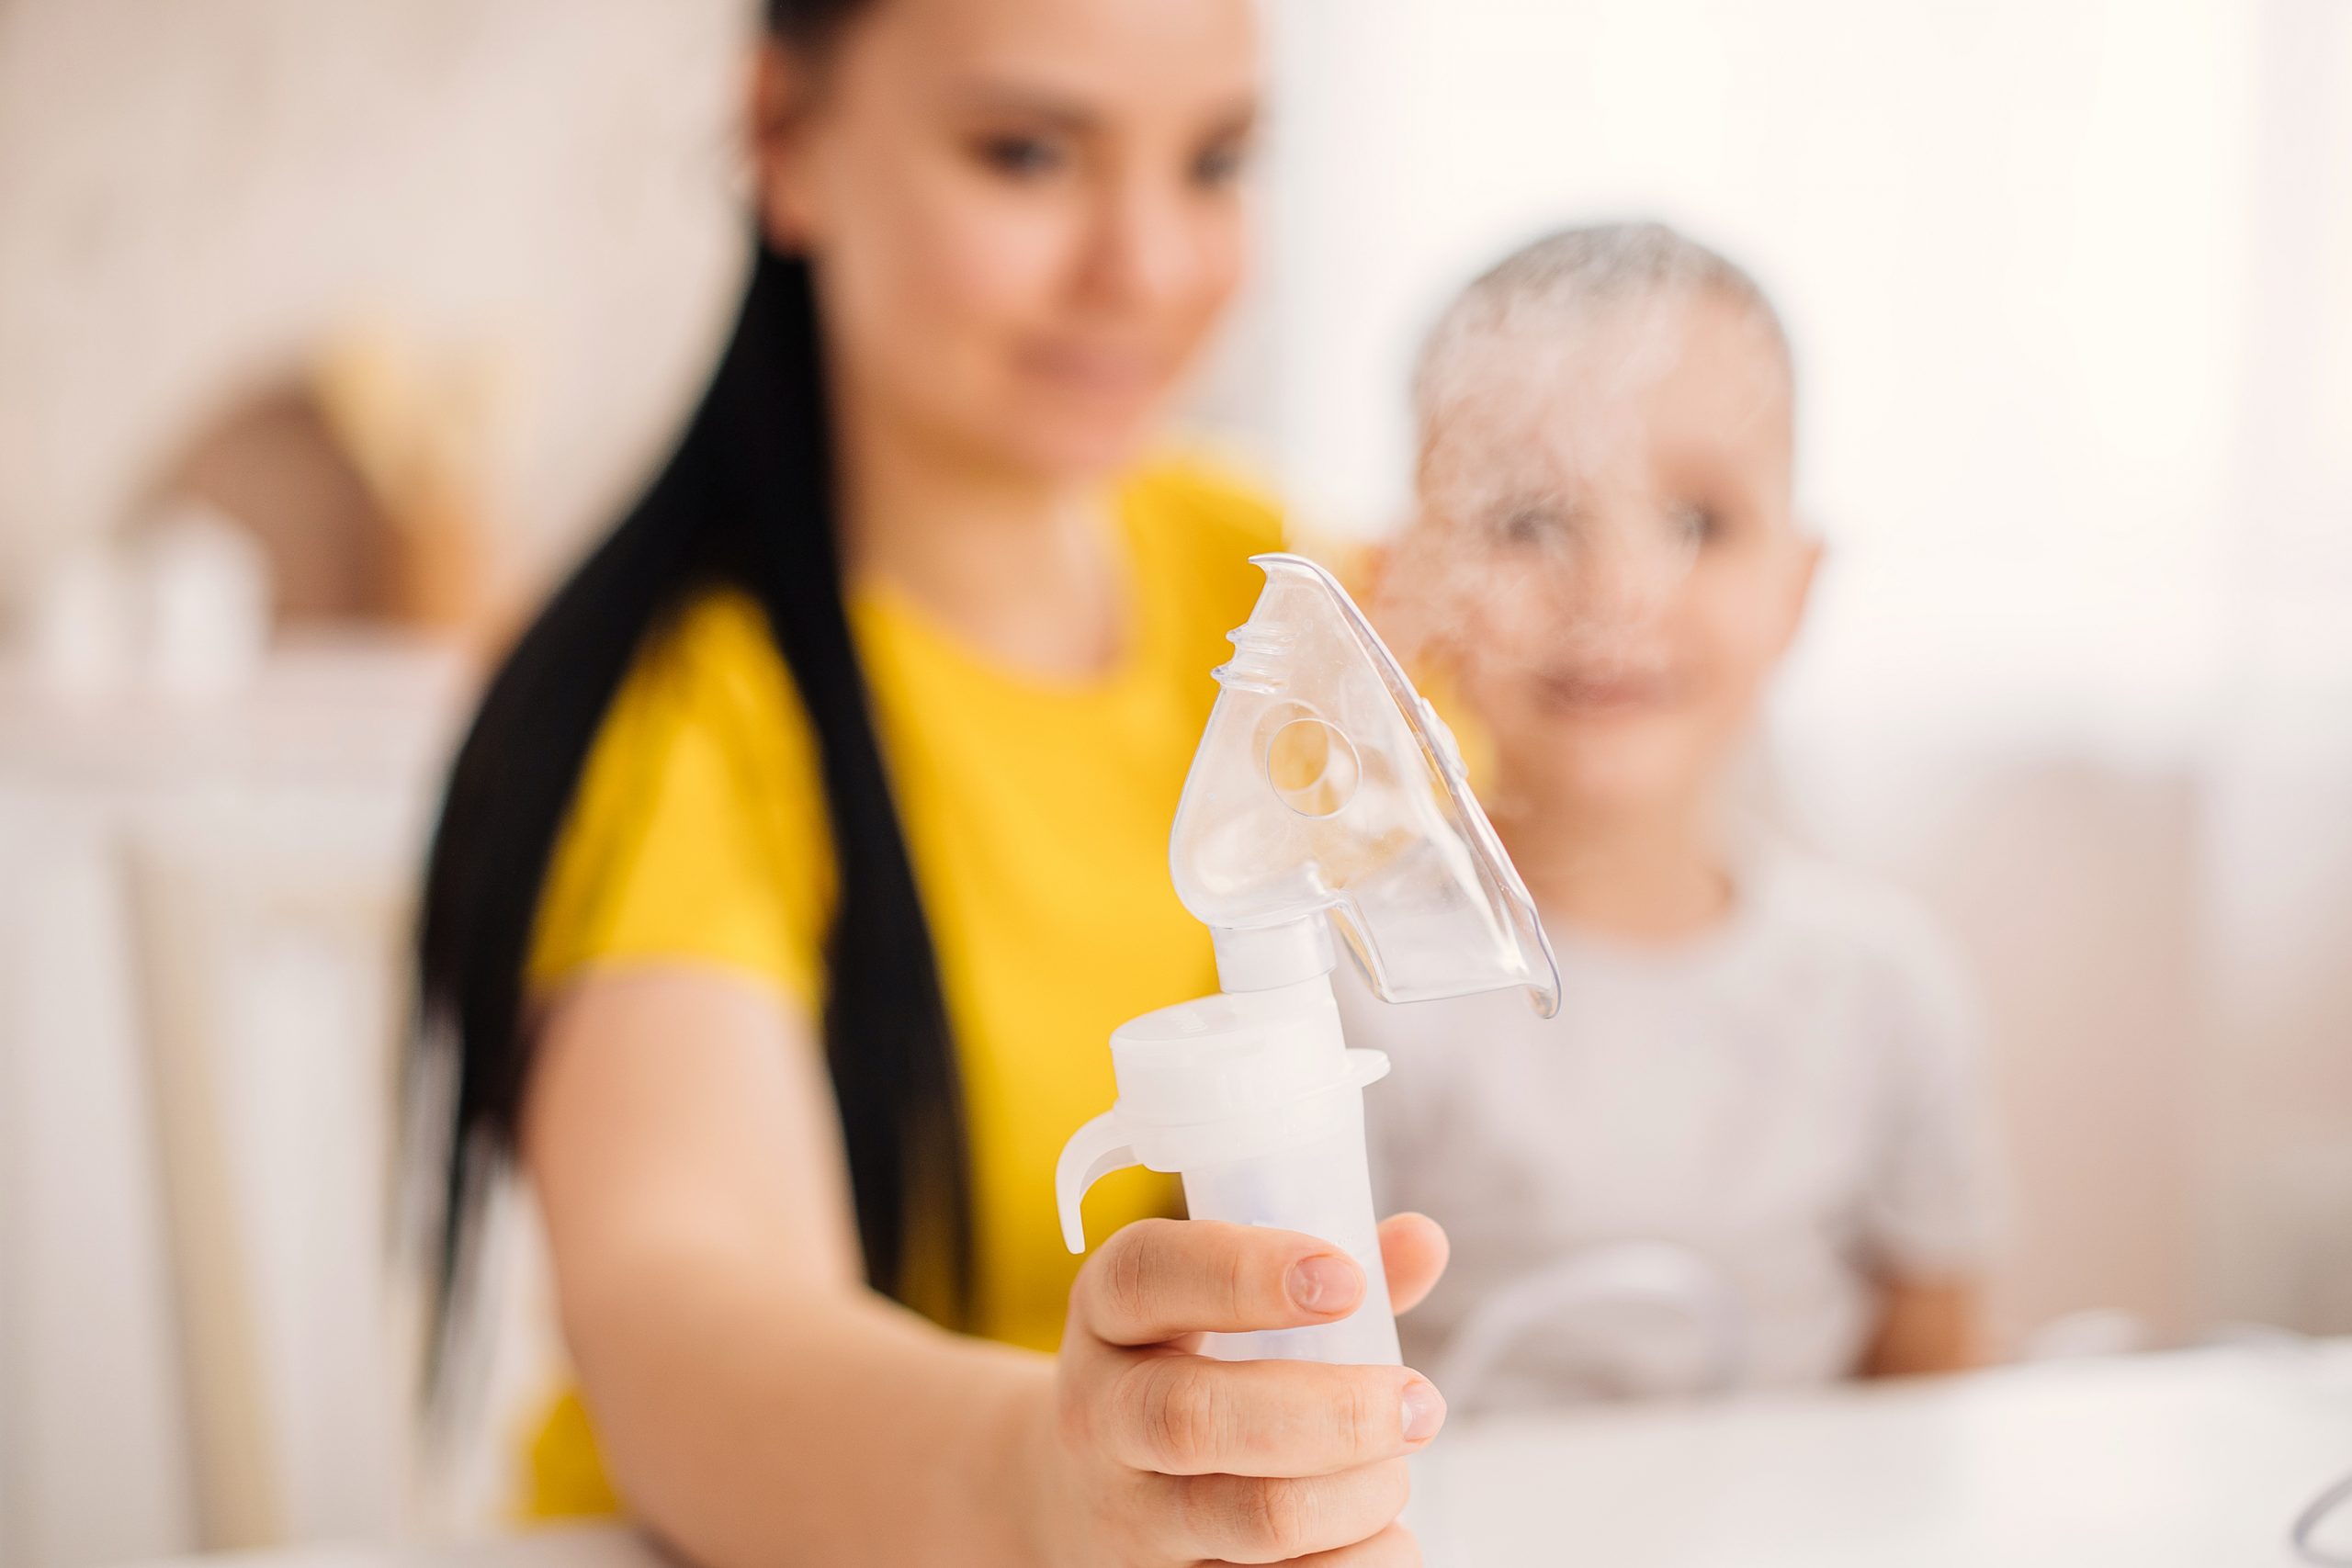 Lavado nasal en niños: ¿cómo se hace sin correr riesgos?